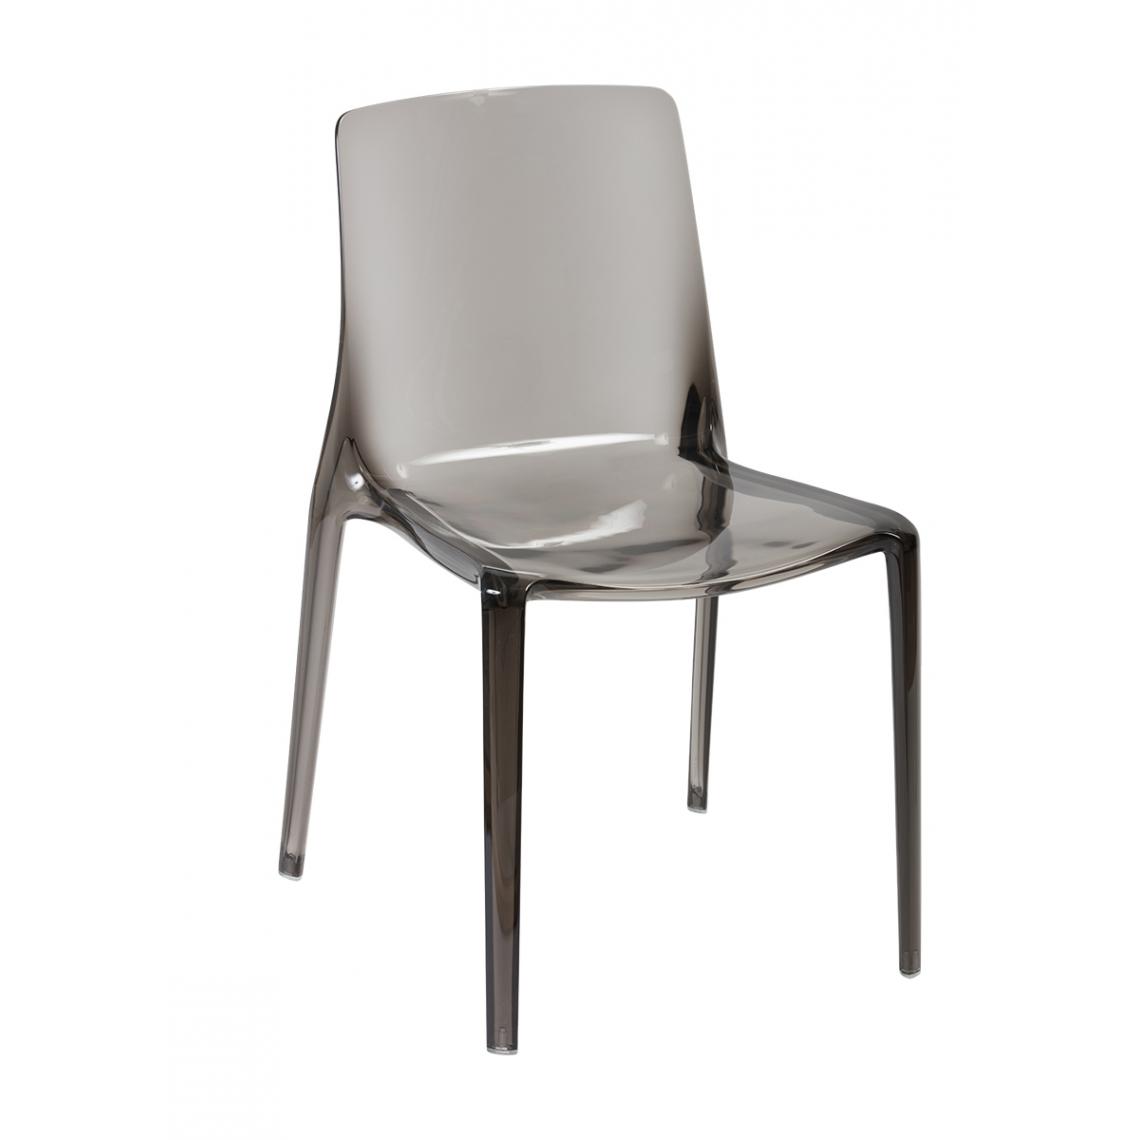 Pegane - Lot de 4 chaises en polycarbonate coloris gris foncé - Longueur 47 x Largeur 51 x hauteur 82 x hauteur assise 46 cm - Chaises